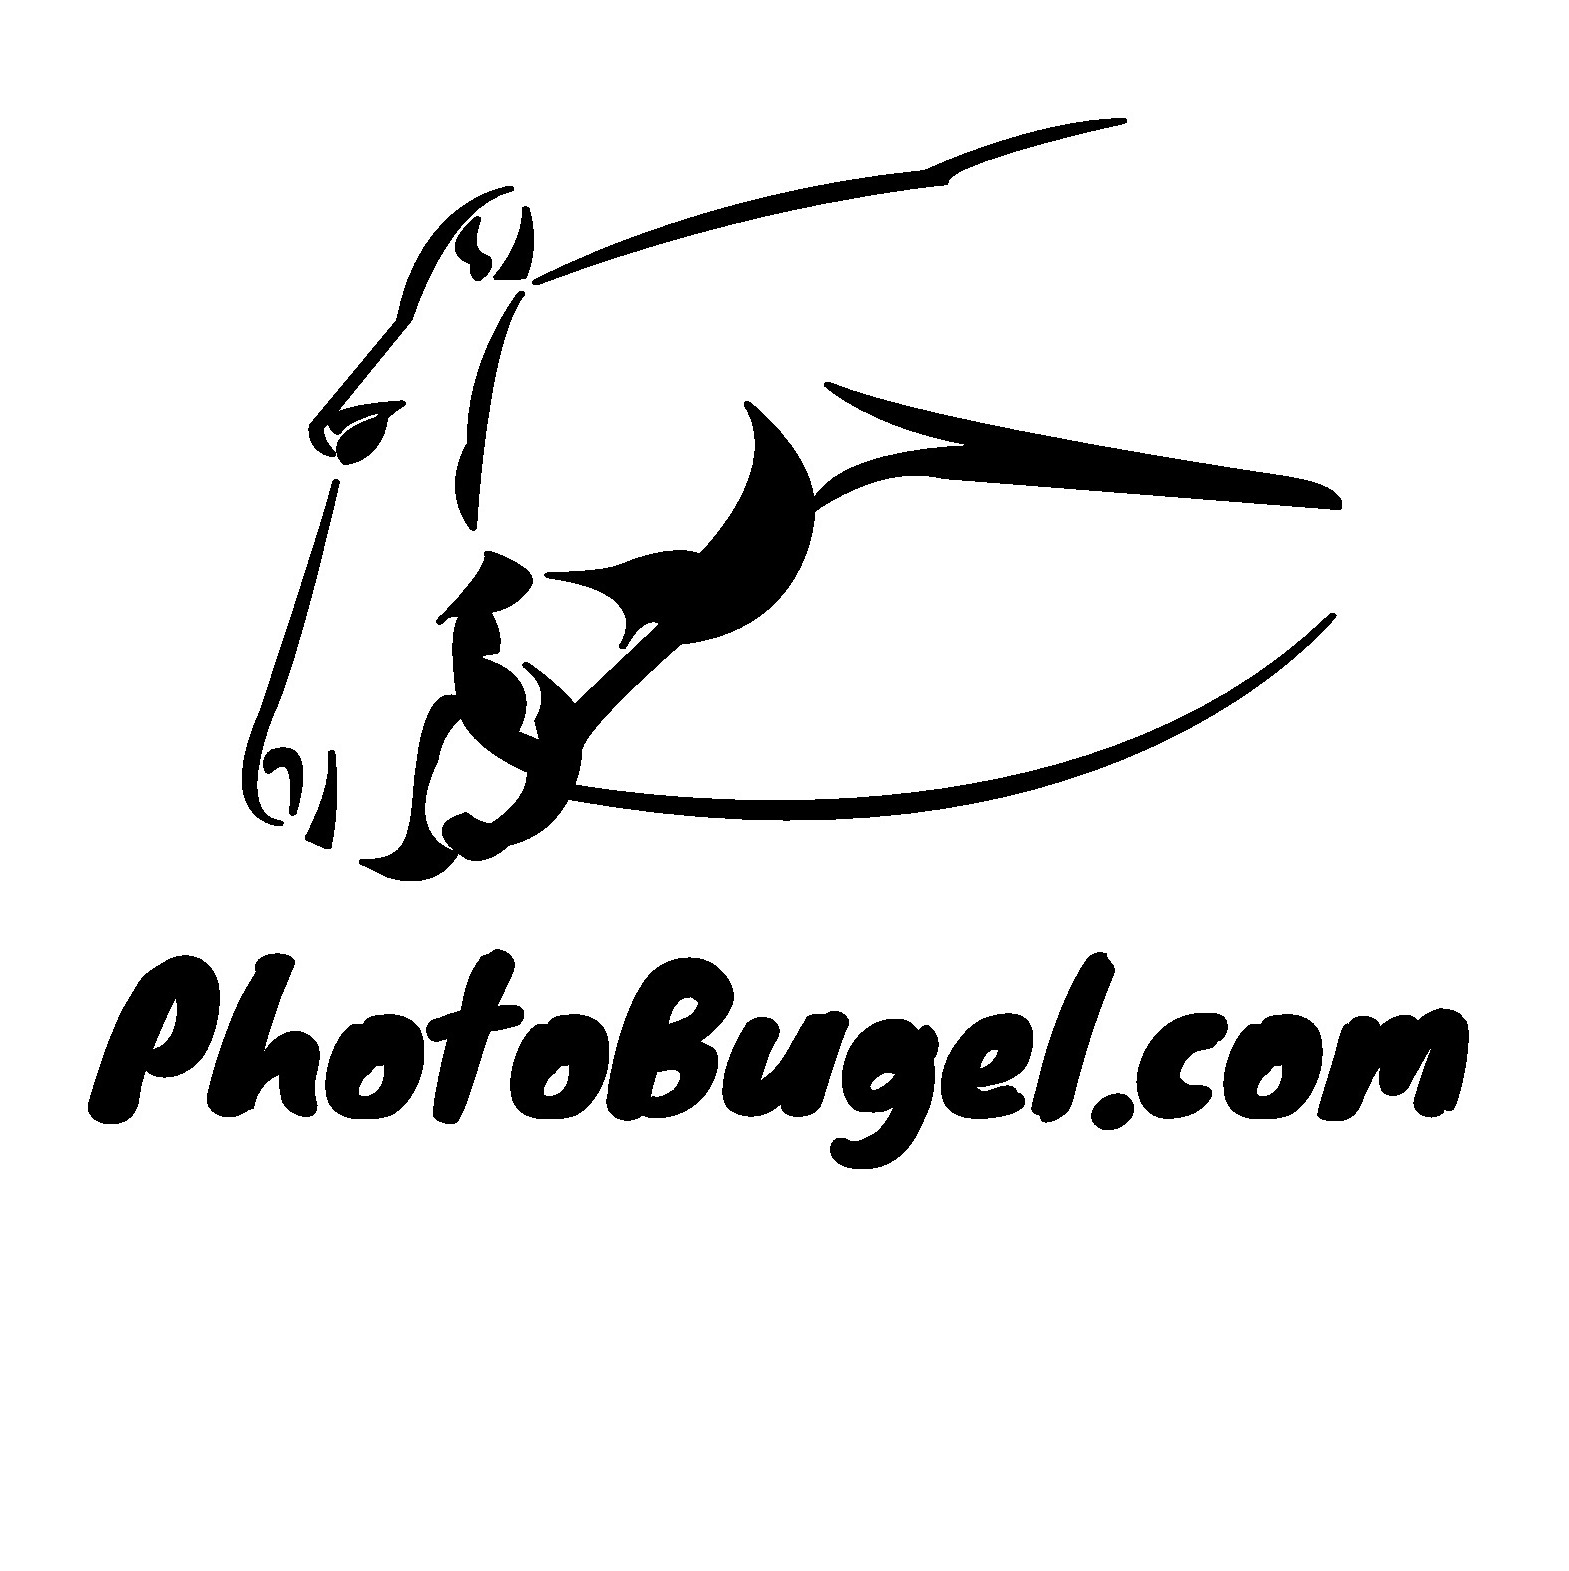 PhotoBugel.com